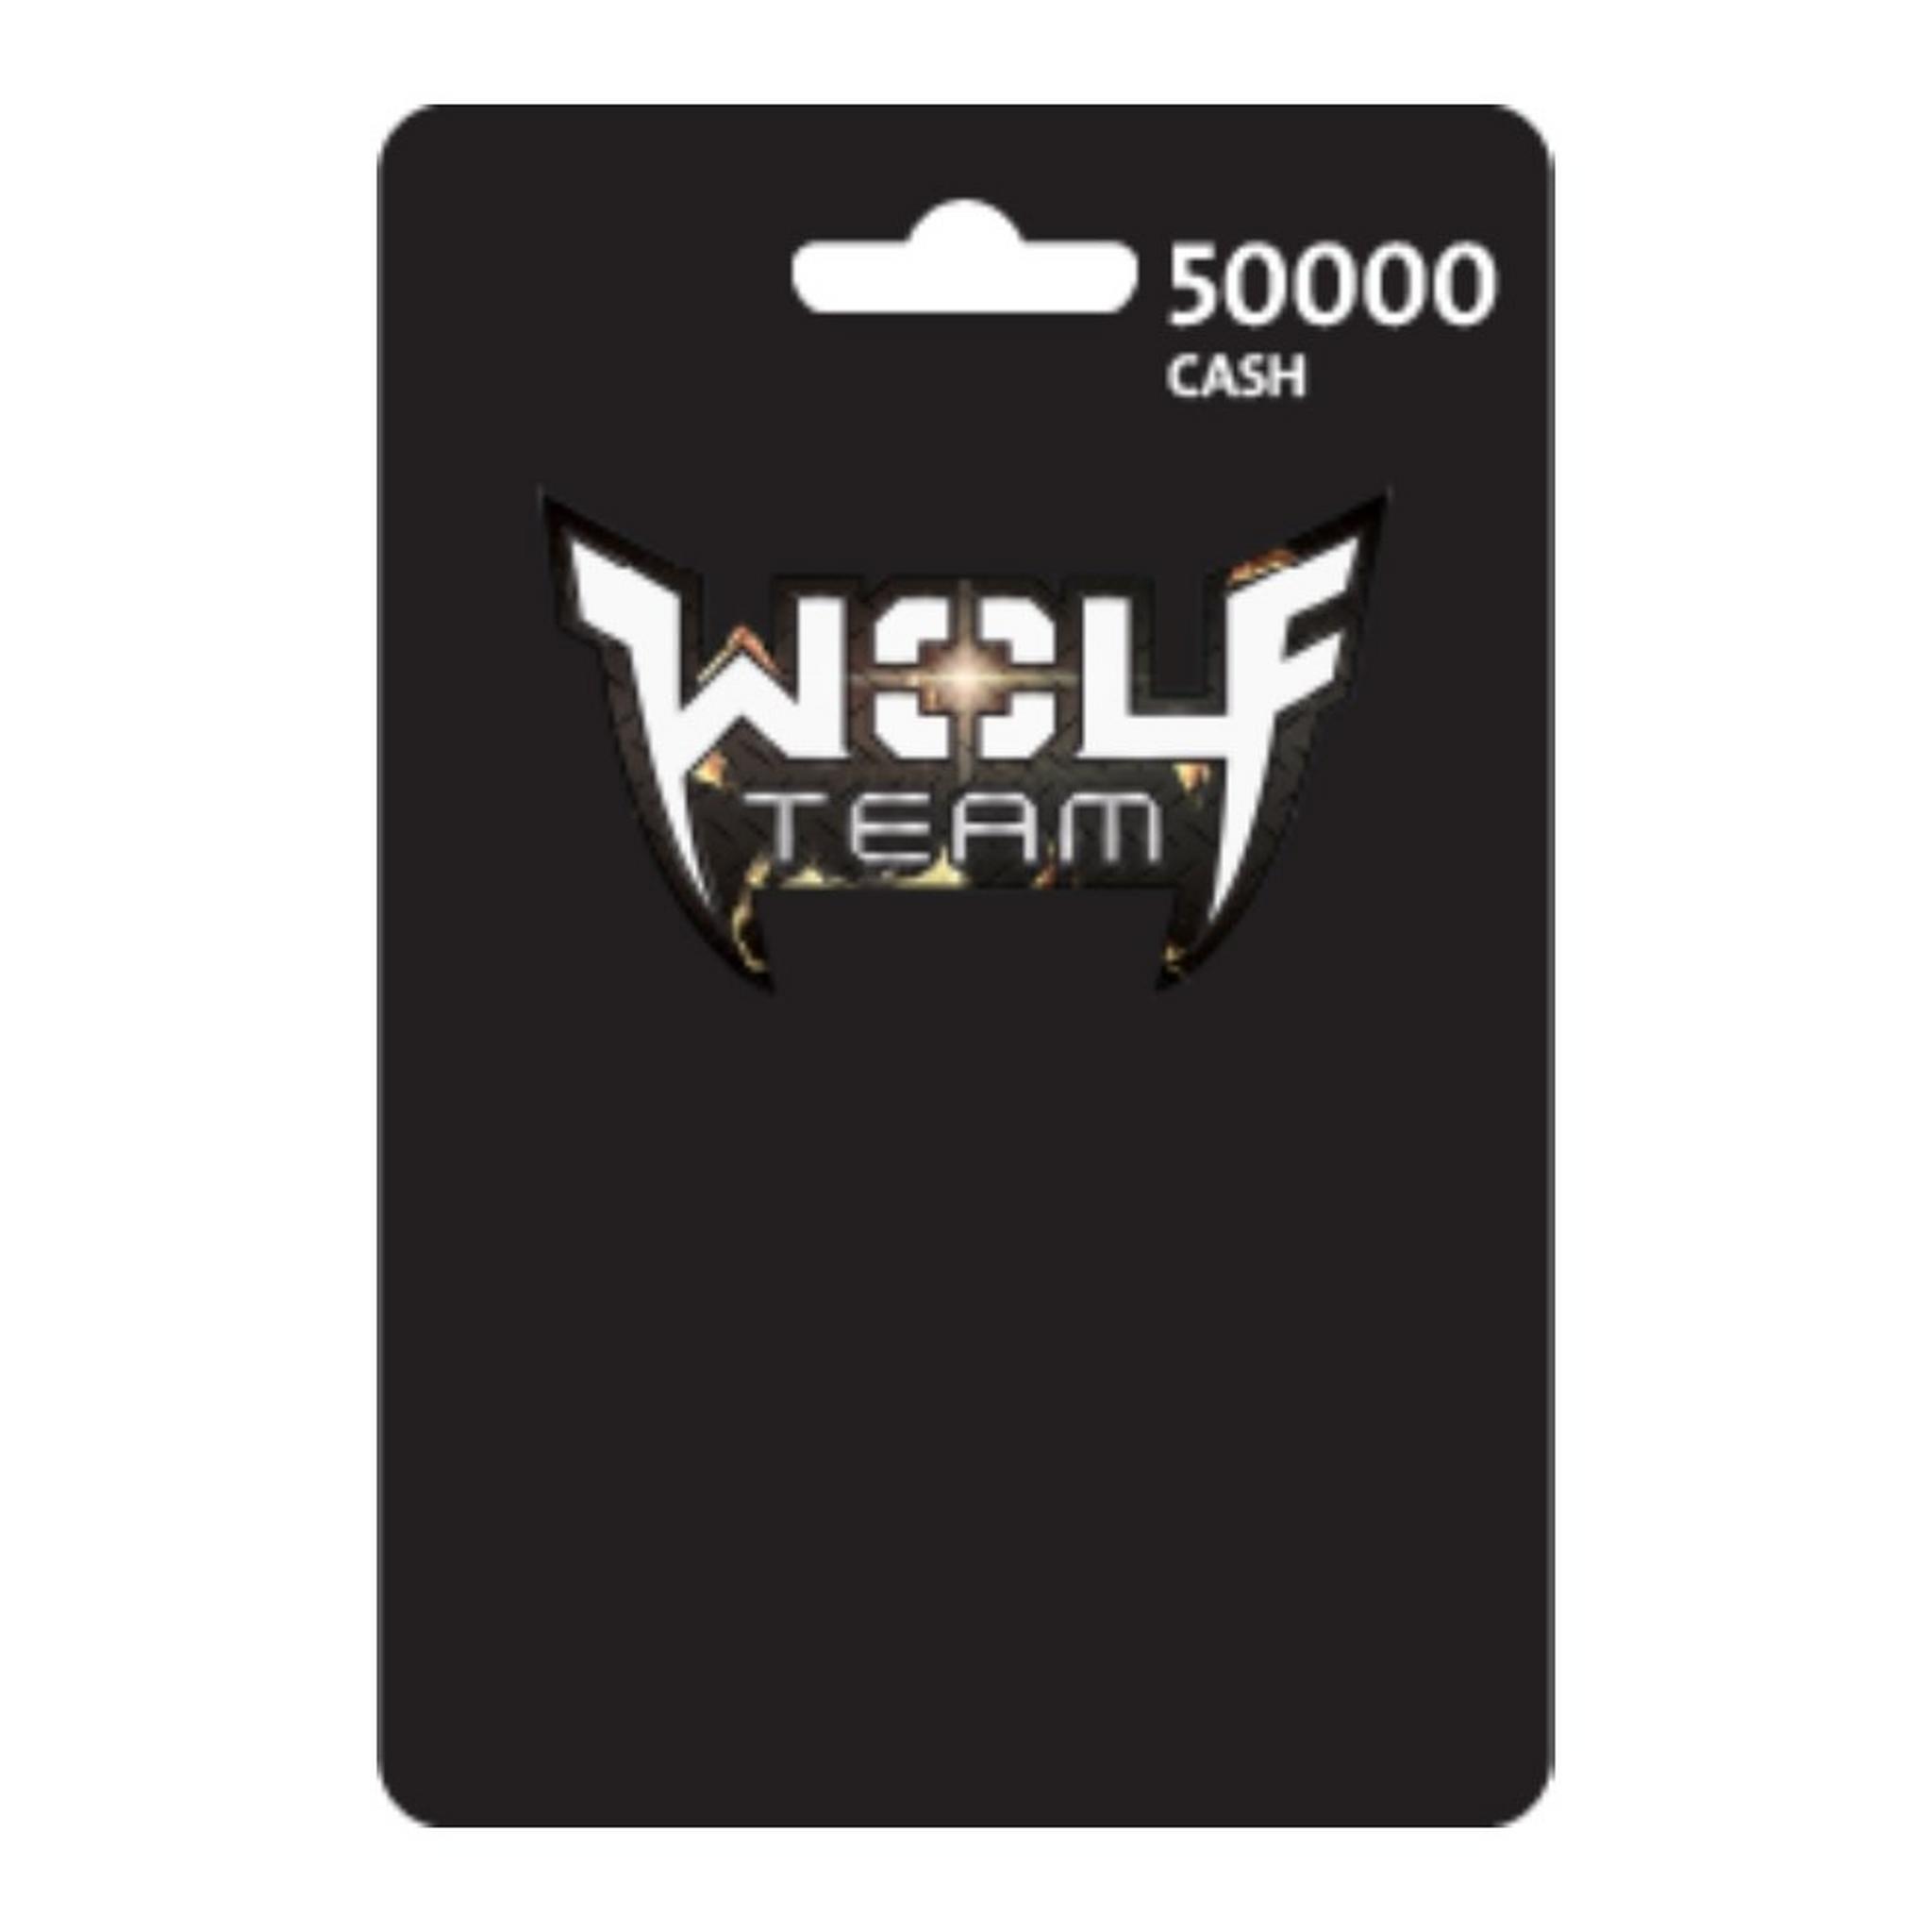 Wolfteam Mena 50000 Cash